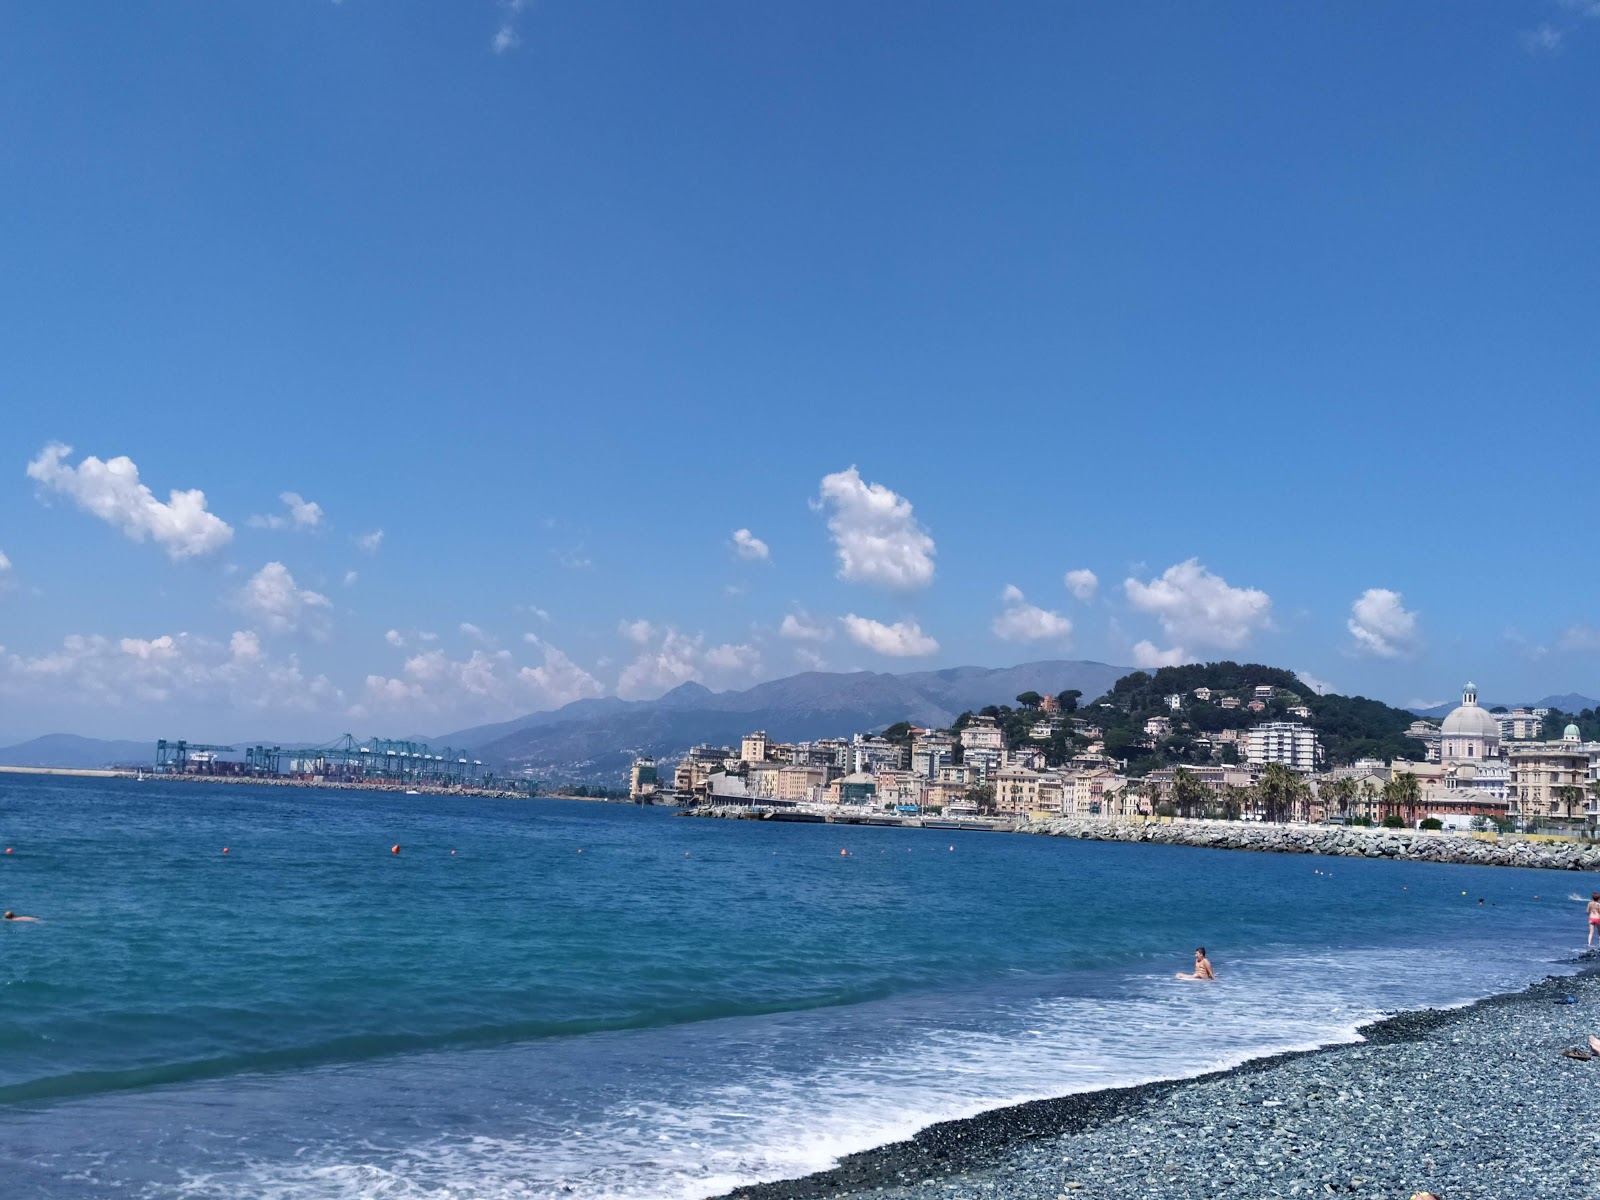 Fotografie cu Spiaggia Multedo - locul popular printre cunoscătorii de relaxare